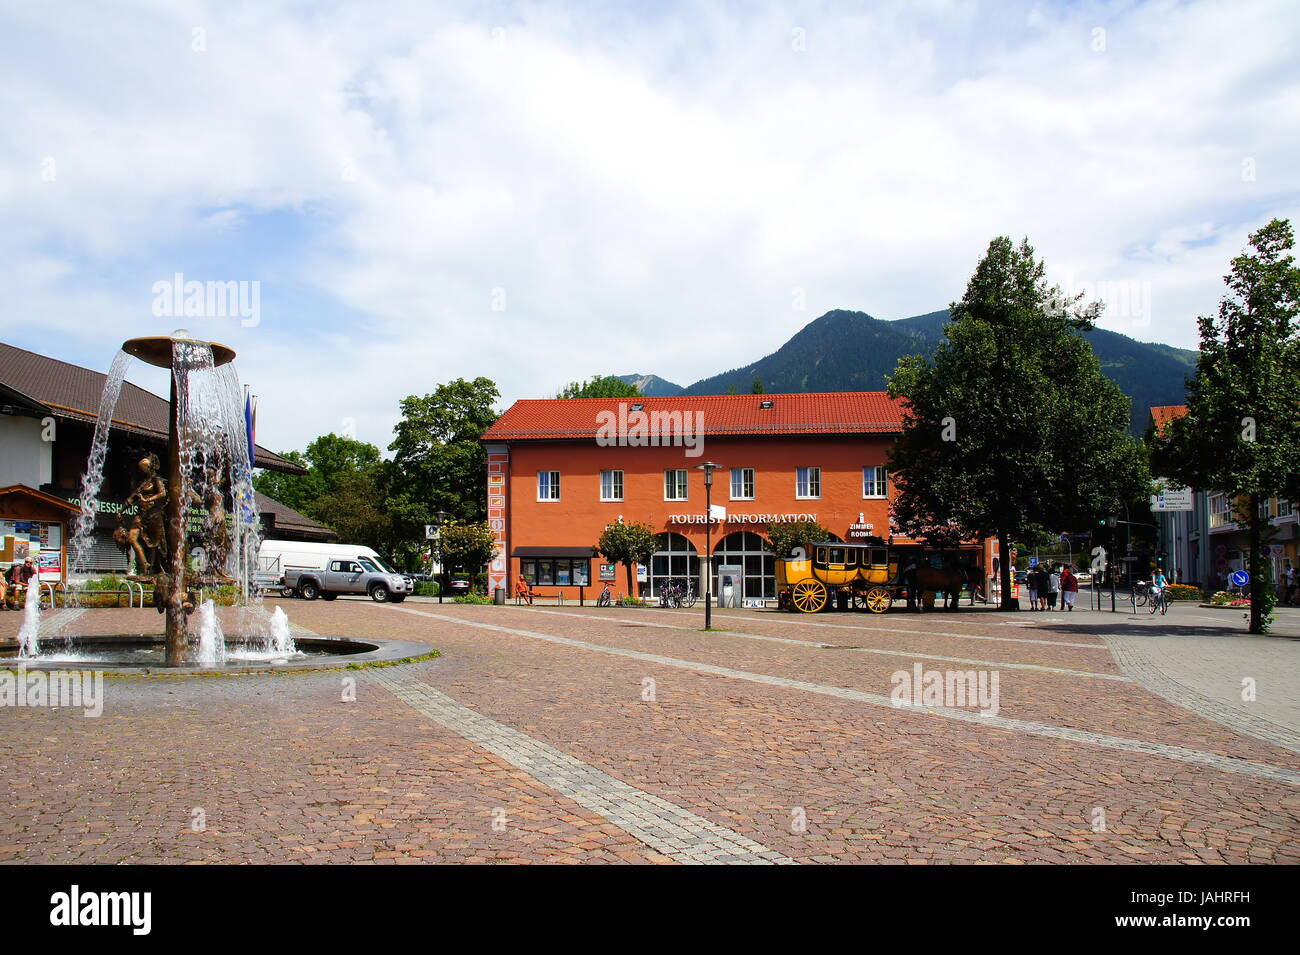 Richard-Strauß-Platz in Garmisch-Partenkirchen mit Touristinfo Stock Photo